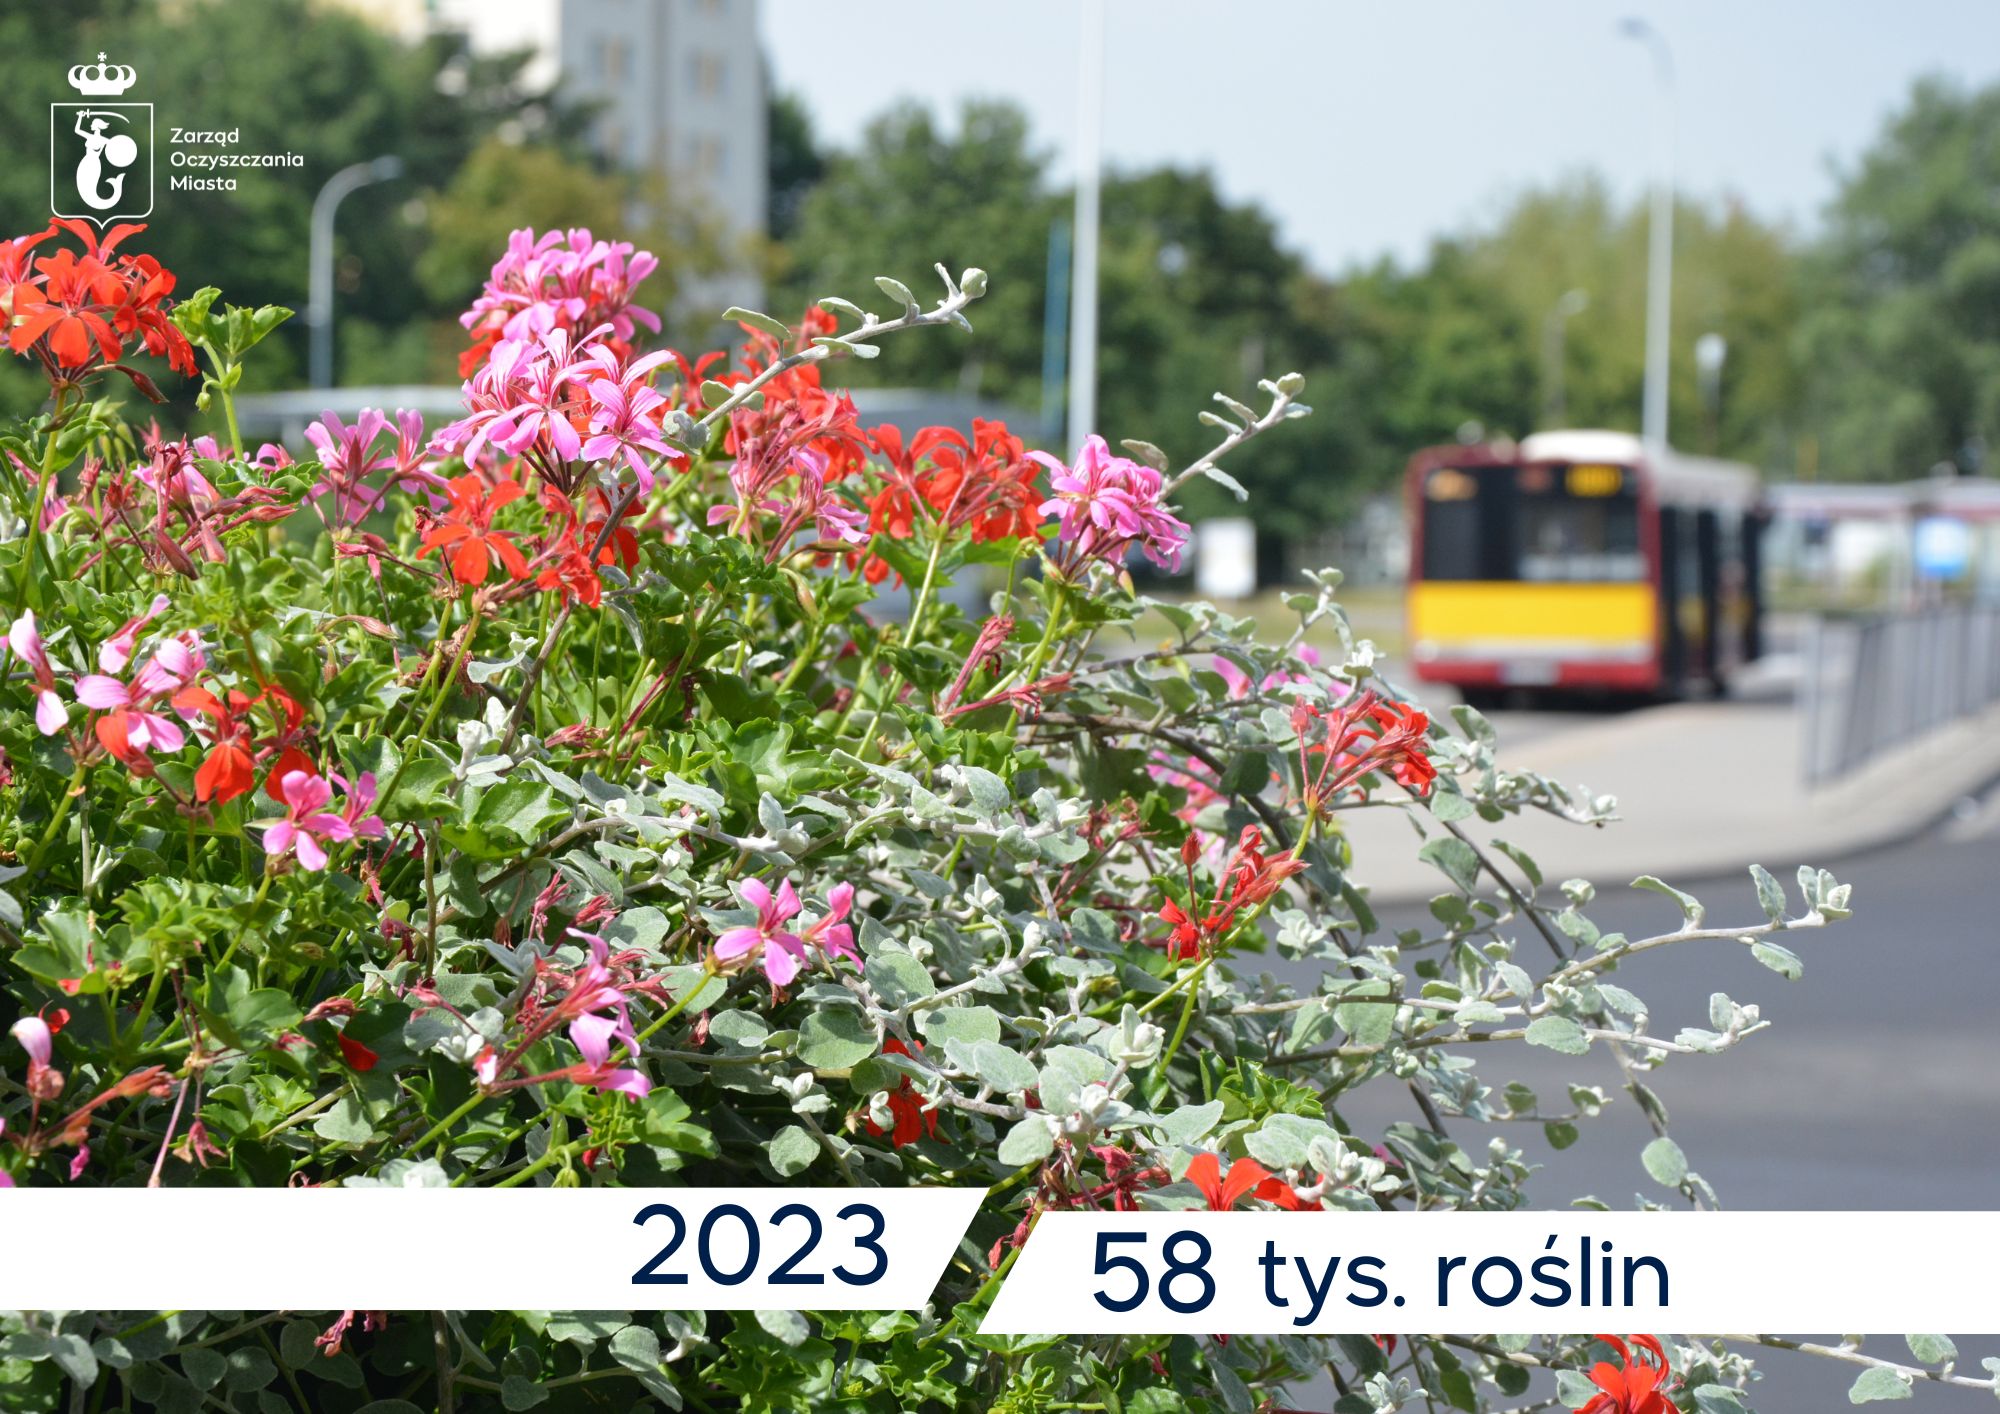 Pelargonie, w tle autobus na przystanku, tekst: 2023, 58 tys. roślin